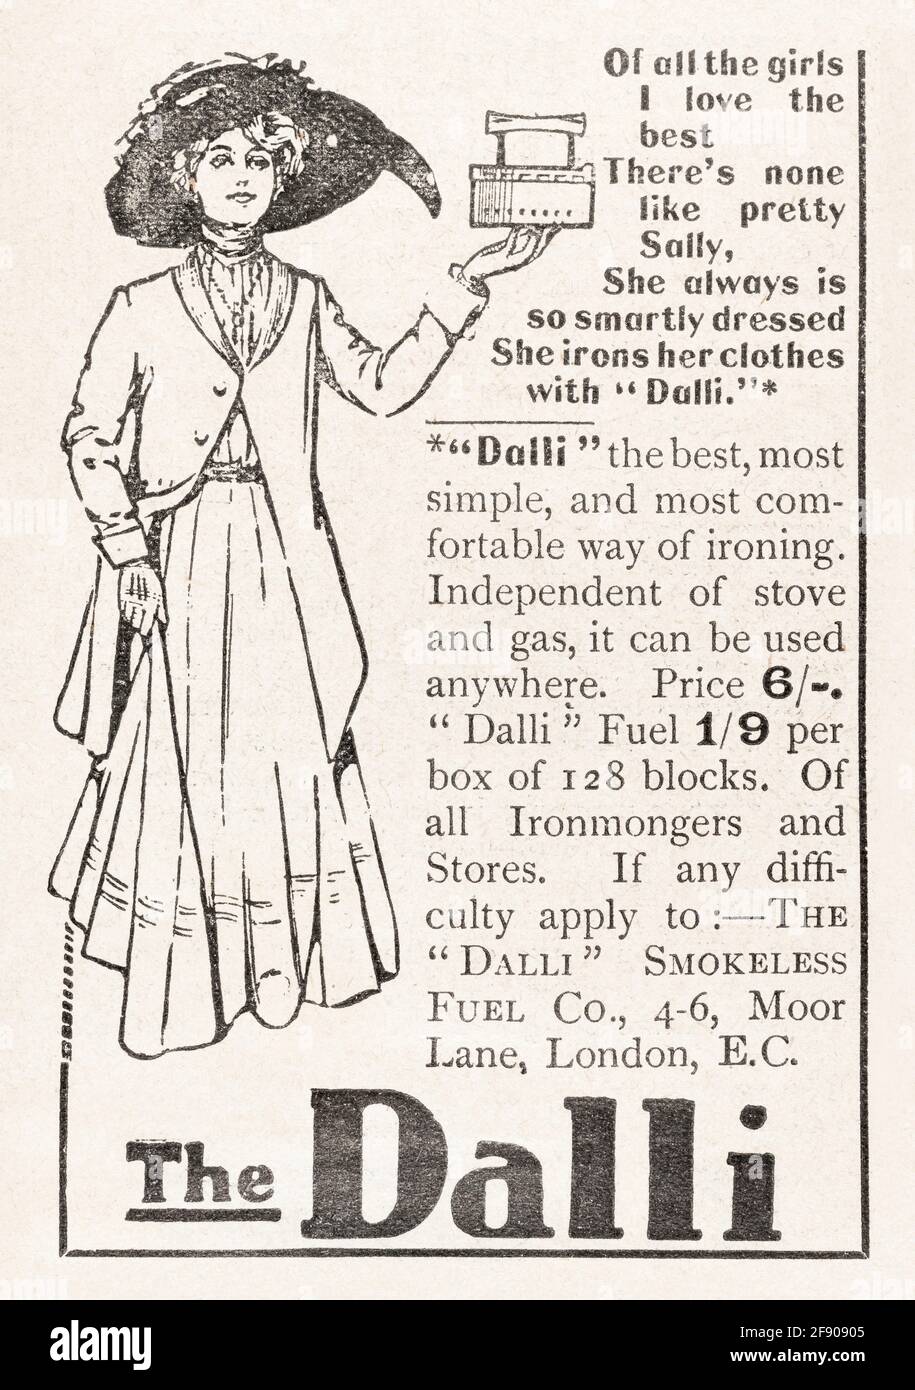 Alte Vintage Edwardian Magazin Anzeige für Dalli Kleidung Eisen aus dem Jahr 1911. Für alte Wäschereigeräte, viktorianischen Haushalt Leben. Stockfoto